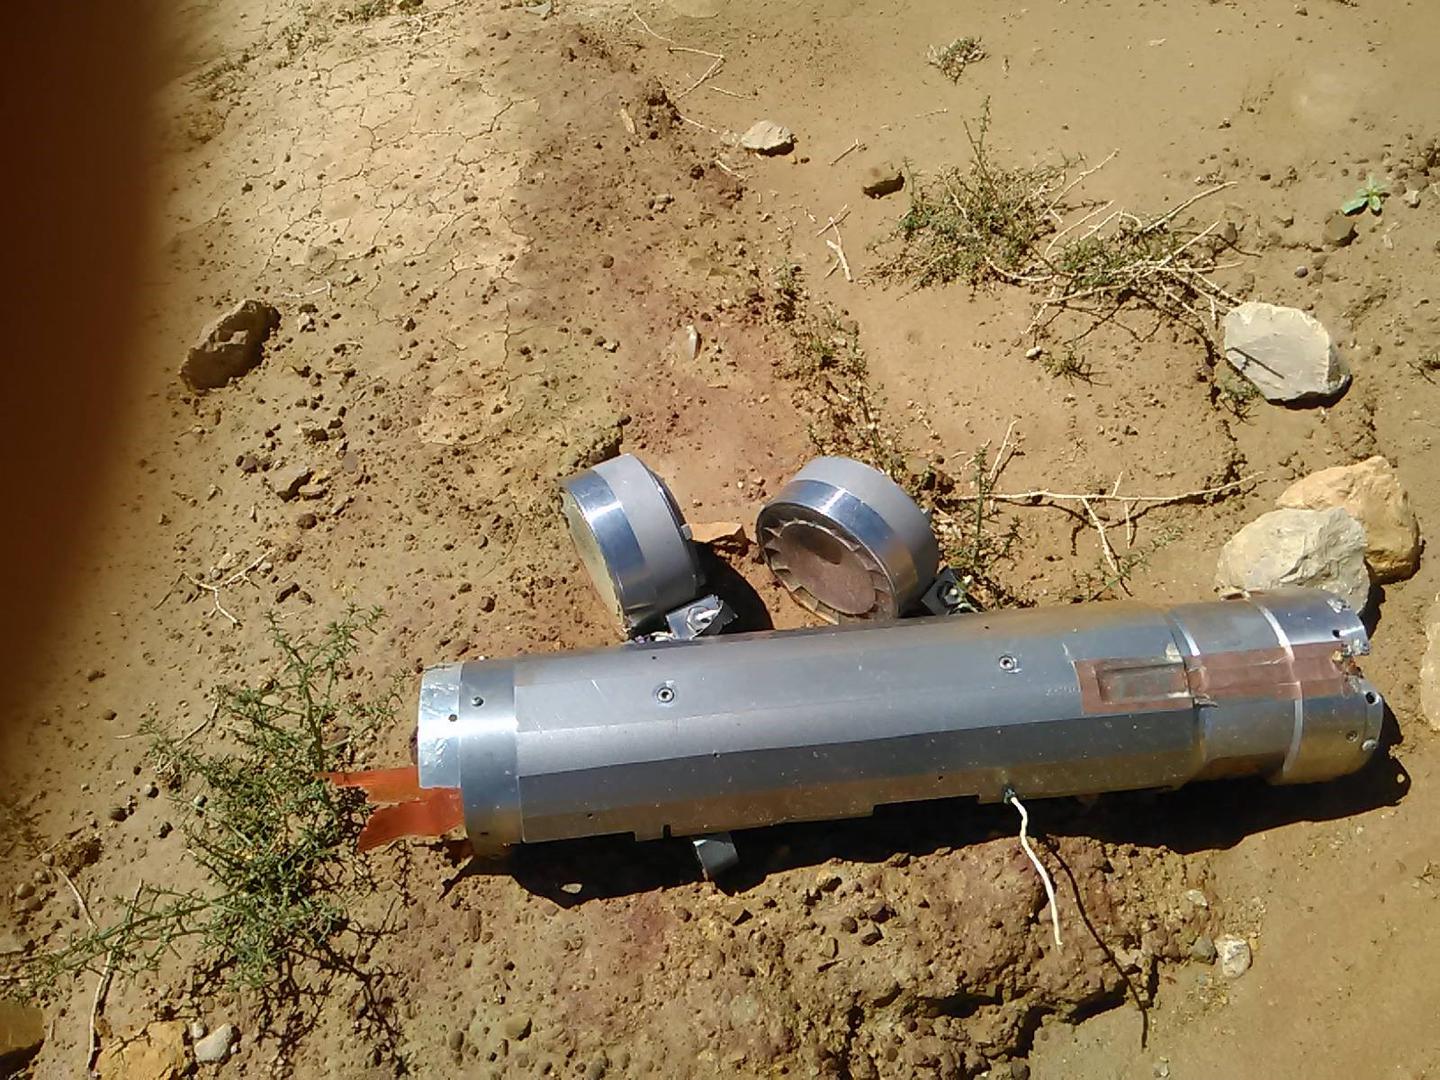 Fragments d’une sous-munition BLU-108, larguée par une bombe à sous-munitions CBU-105 (« Sensor Fuzed Weapon » - arme amorcée par capteur) lors d'une attaque menée contre une carrière de la cimenterie Amran le 15 février 2016.